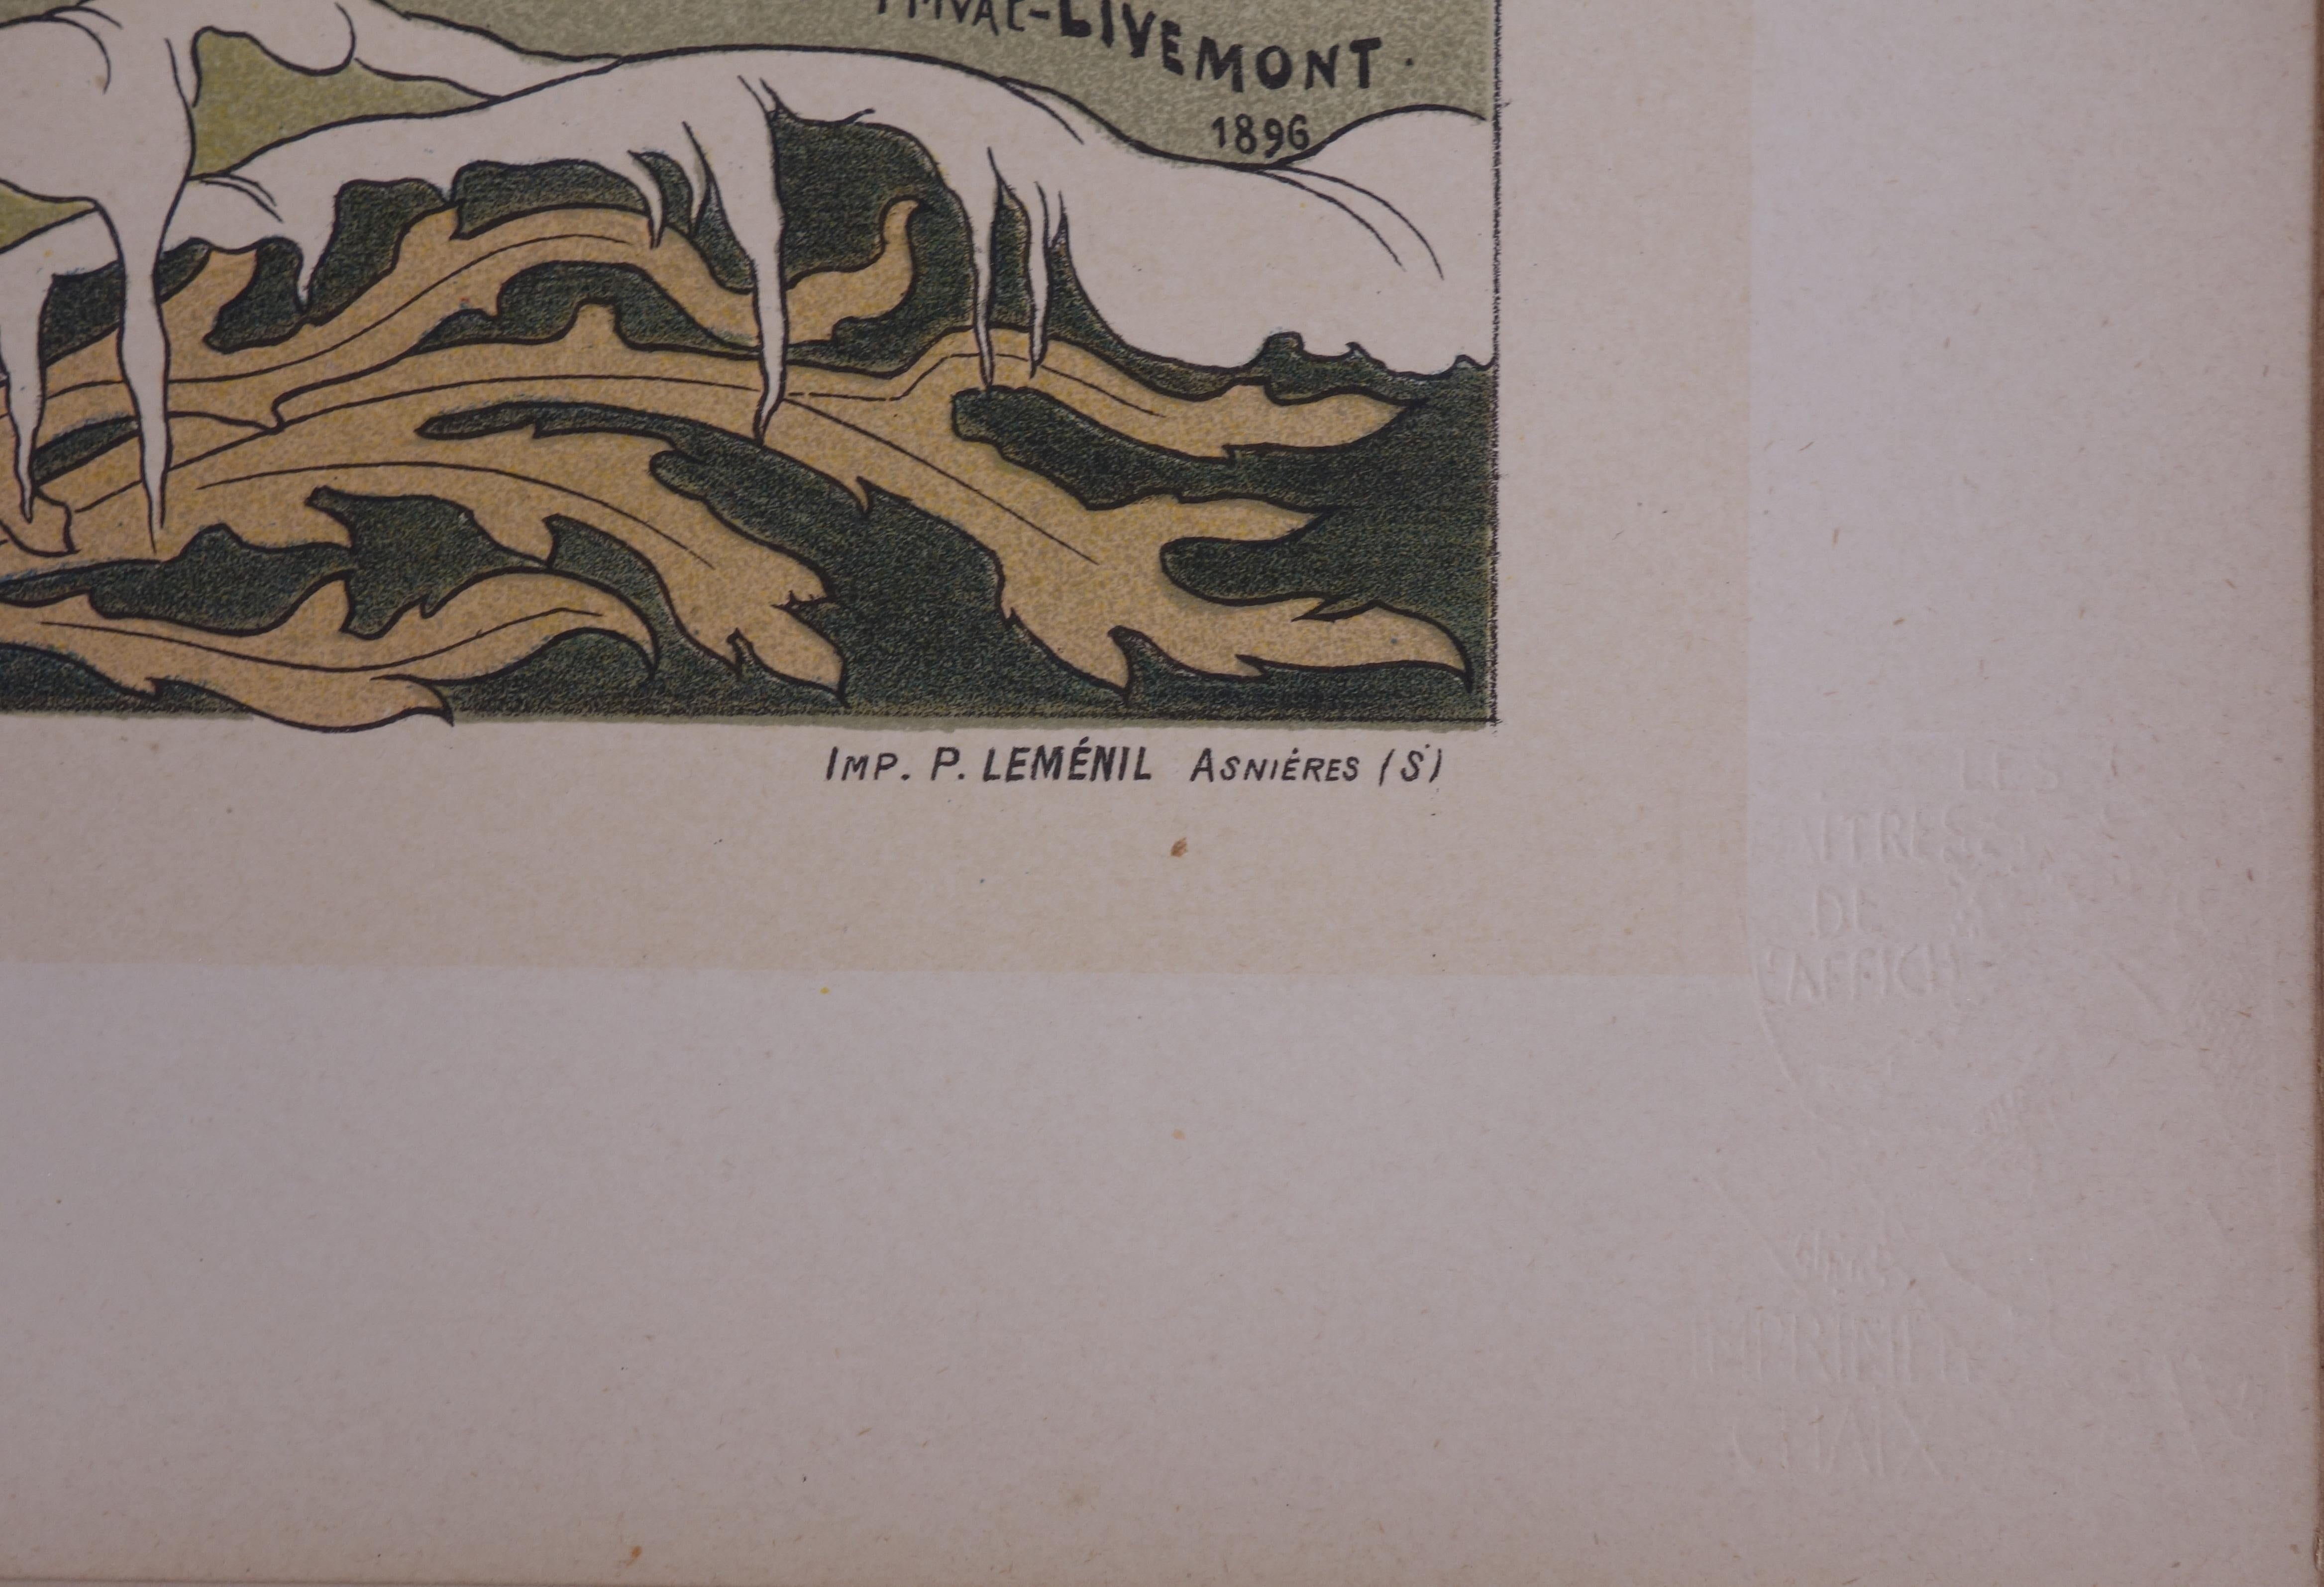 Normandy, Cabourg - Lithograph (Les Maîtres de l'Affiche), Imprimerie Chaix 1897 - Art Nouveau Print by Henri PRIVAT-LIVEMONT